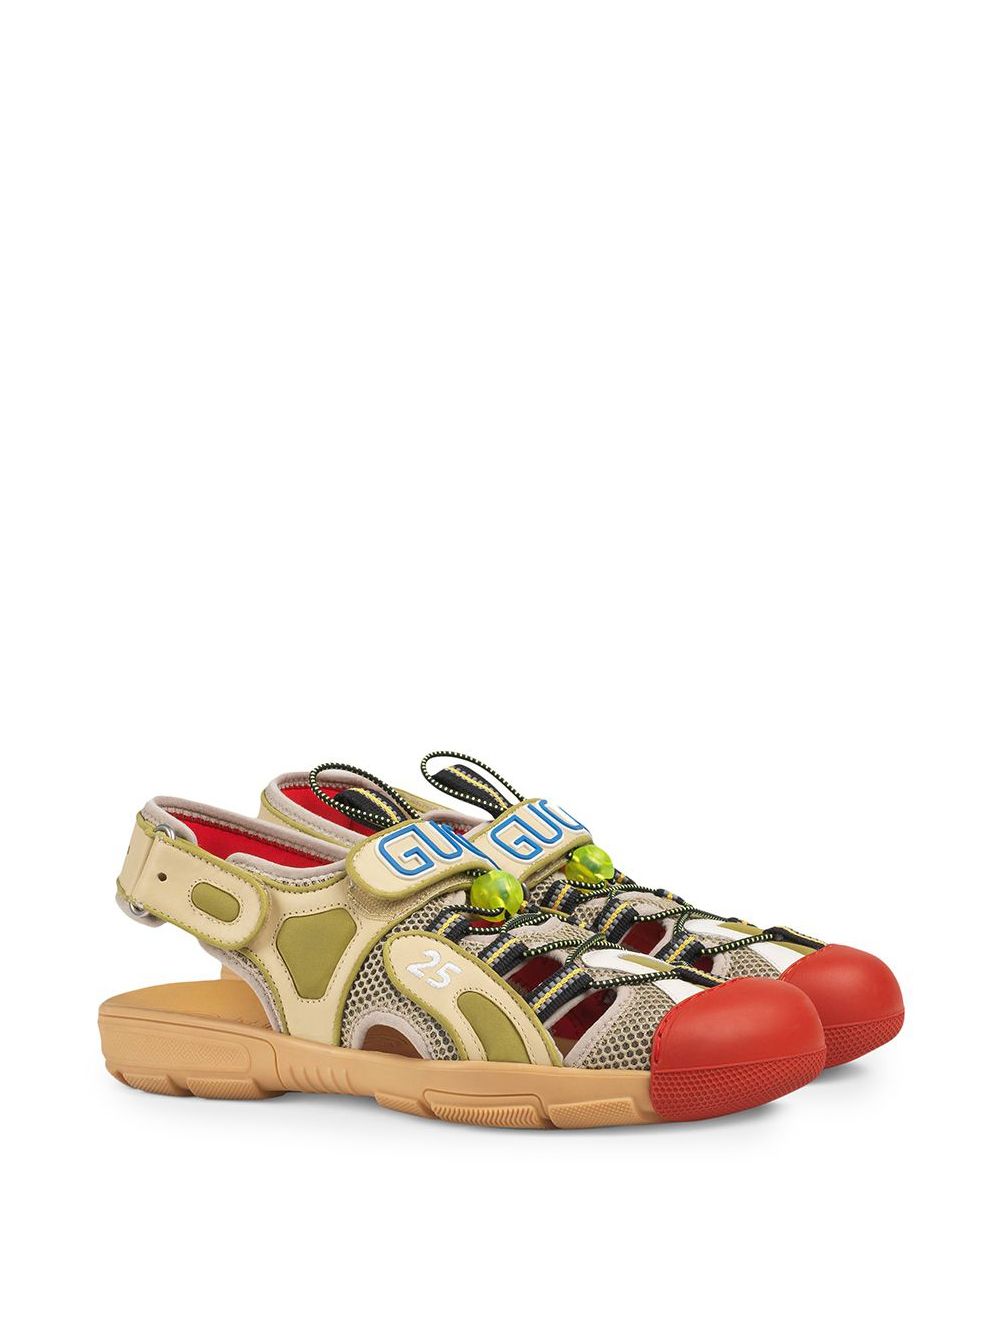 фото Gucci сандалии с сетчатыми вставками